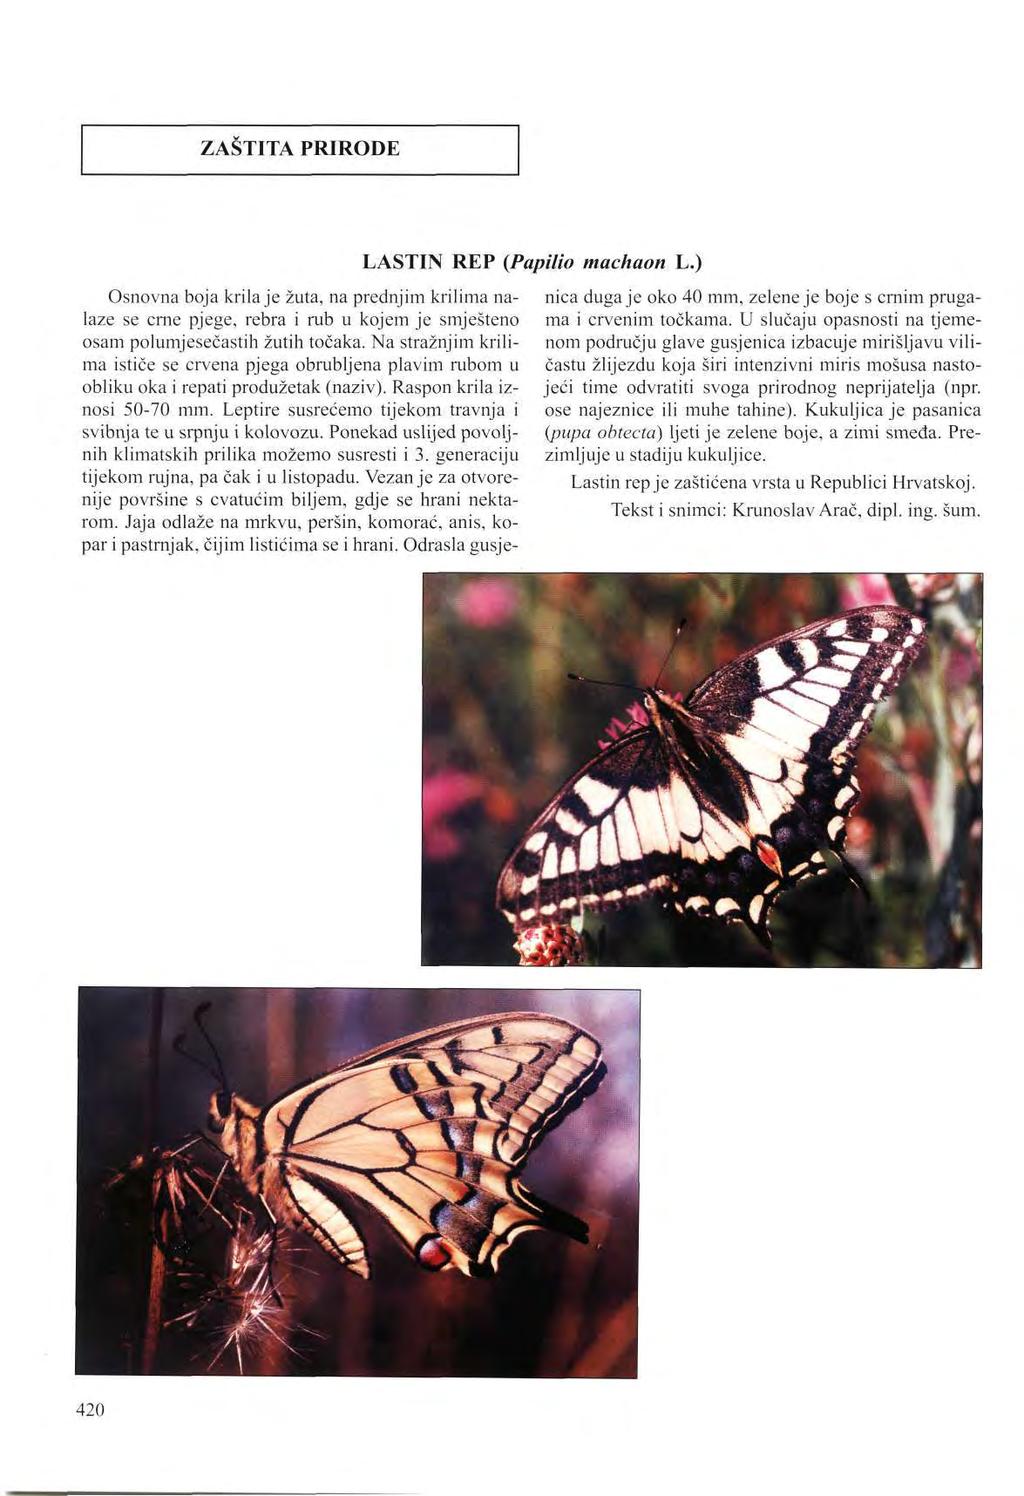 ZAŠTITA PRIRODE LASTIN REP (Papilio machaon L.) Osnovna boja krila je žuta, na prednjim krilima nalaze se crne pjege, rebra i rub u kojem je smješteno osam polumjesečastih žutih točaka.